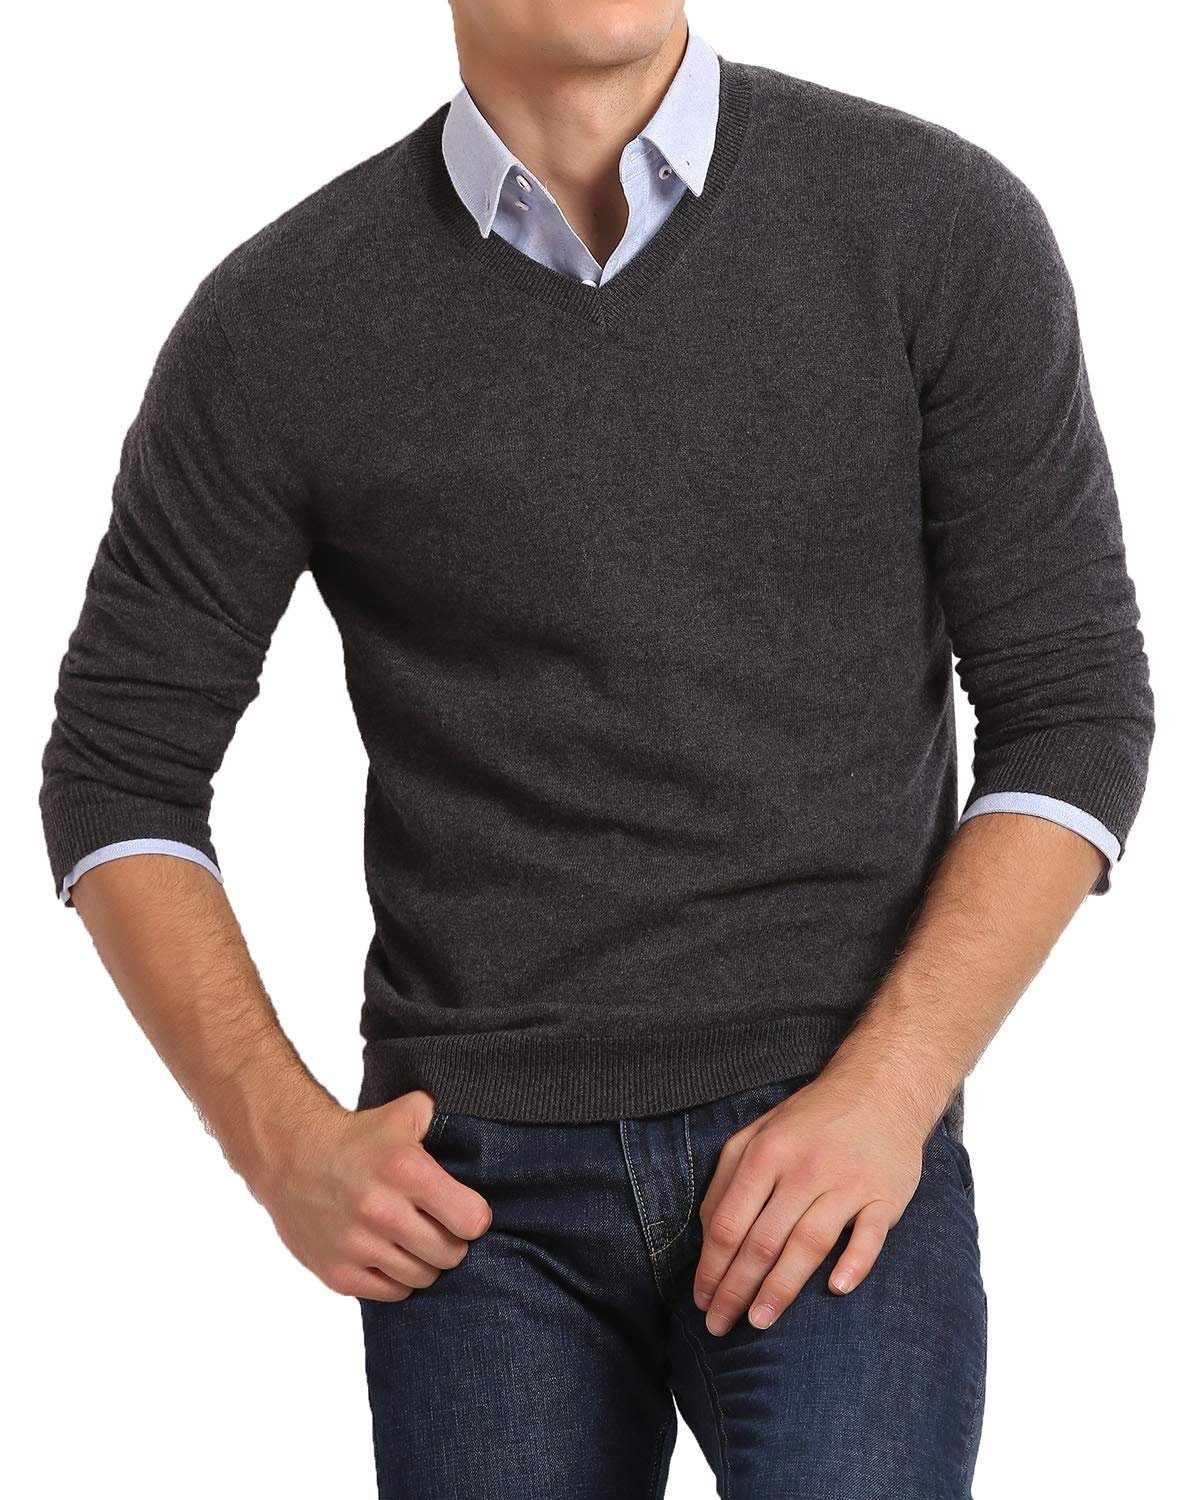 Housruse V-Ausschnitt-Pullover V-Ausschnitt-Pullover,Herren Basic Strick V- Ausschnitt Pullover mit langen Ärmeln geeignet für Sport und Business Größe  L Lässig